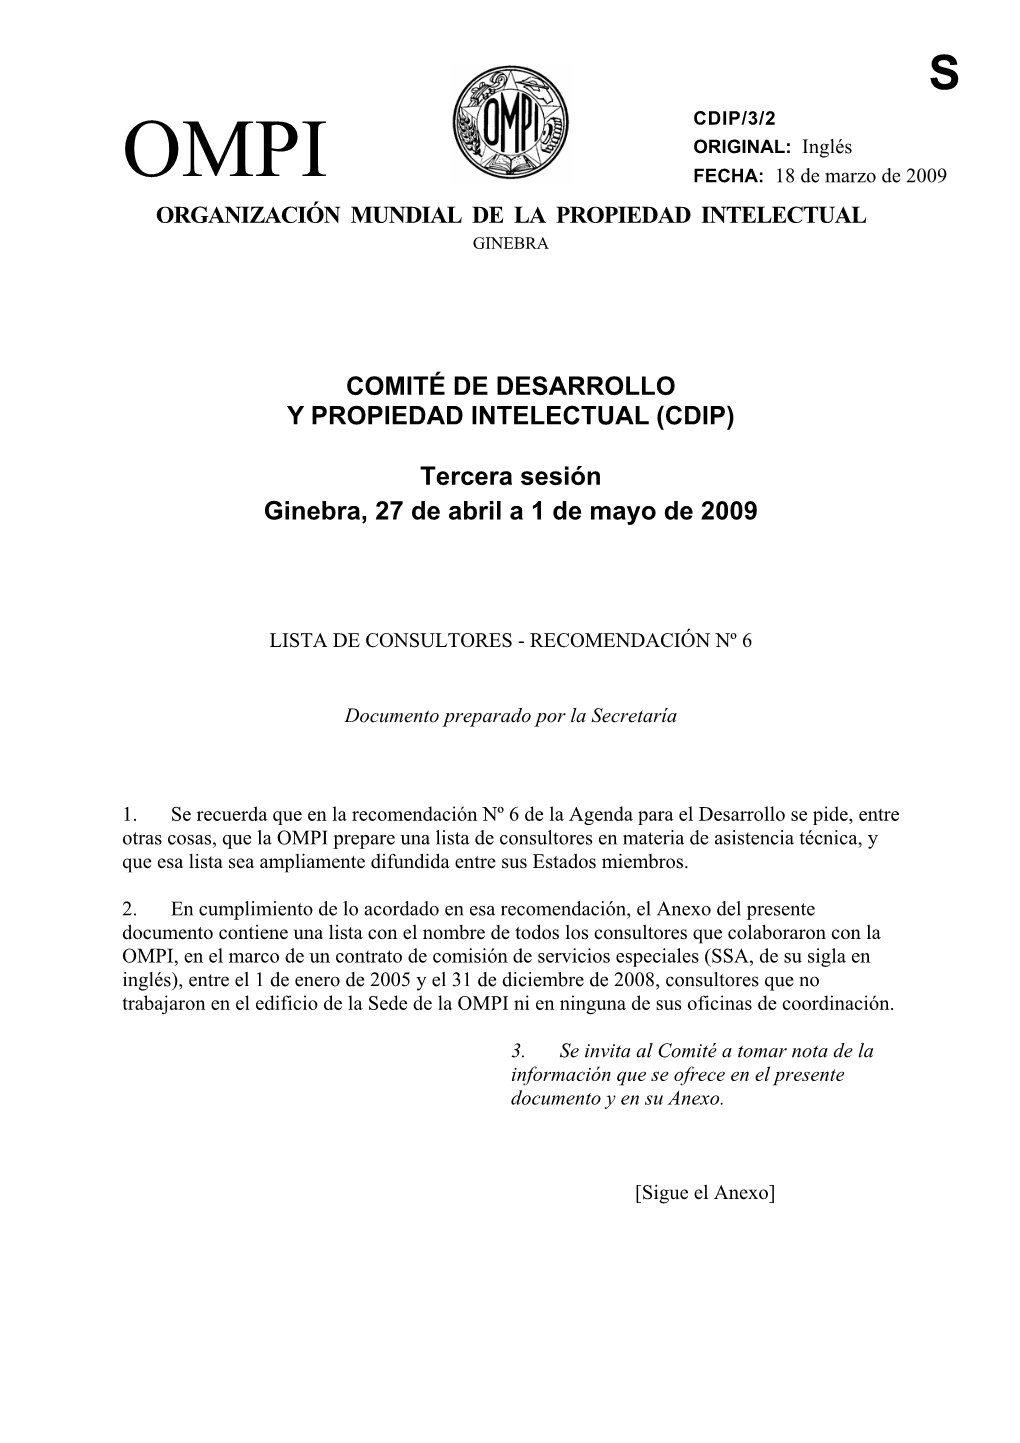 OMPI FECHA: 18 De Marzo De 2009 ORGANIZACIÓN MUNDIAL DE LA PROPIEDAD INTELECTUAL GINEBRA